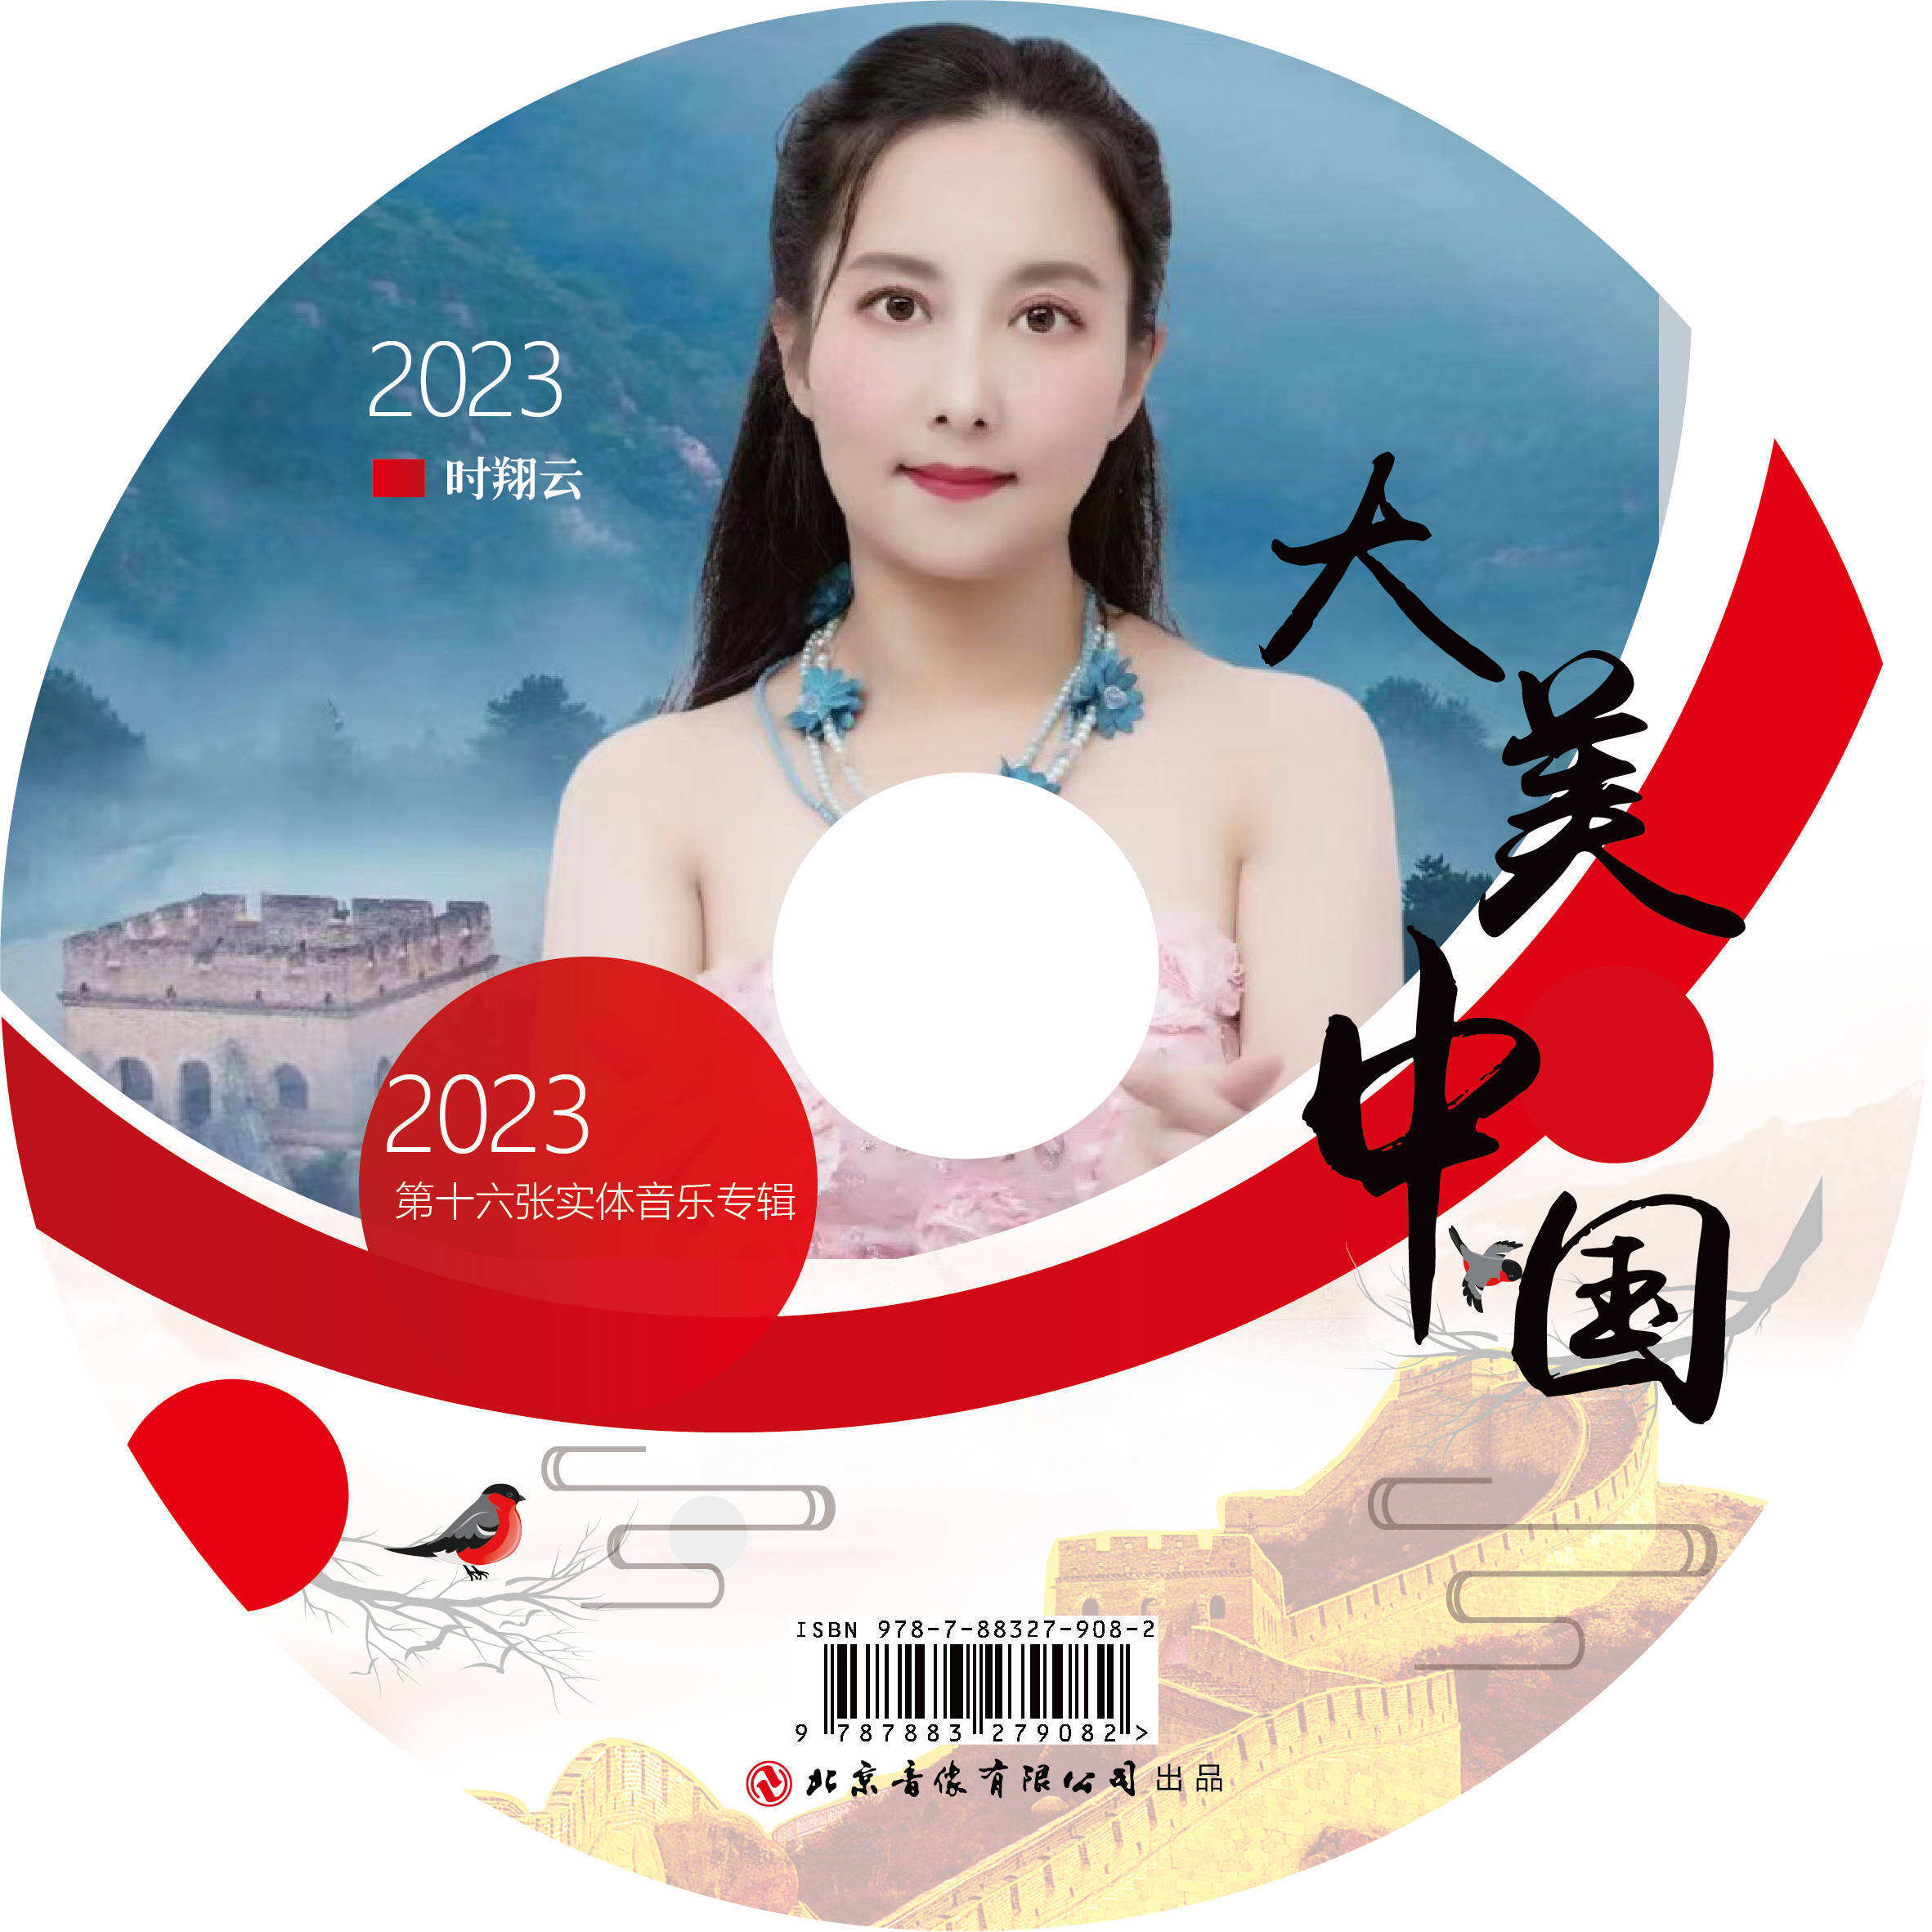 2023时翔云第十六张实体音乐专辑《大美中国》出品